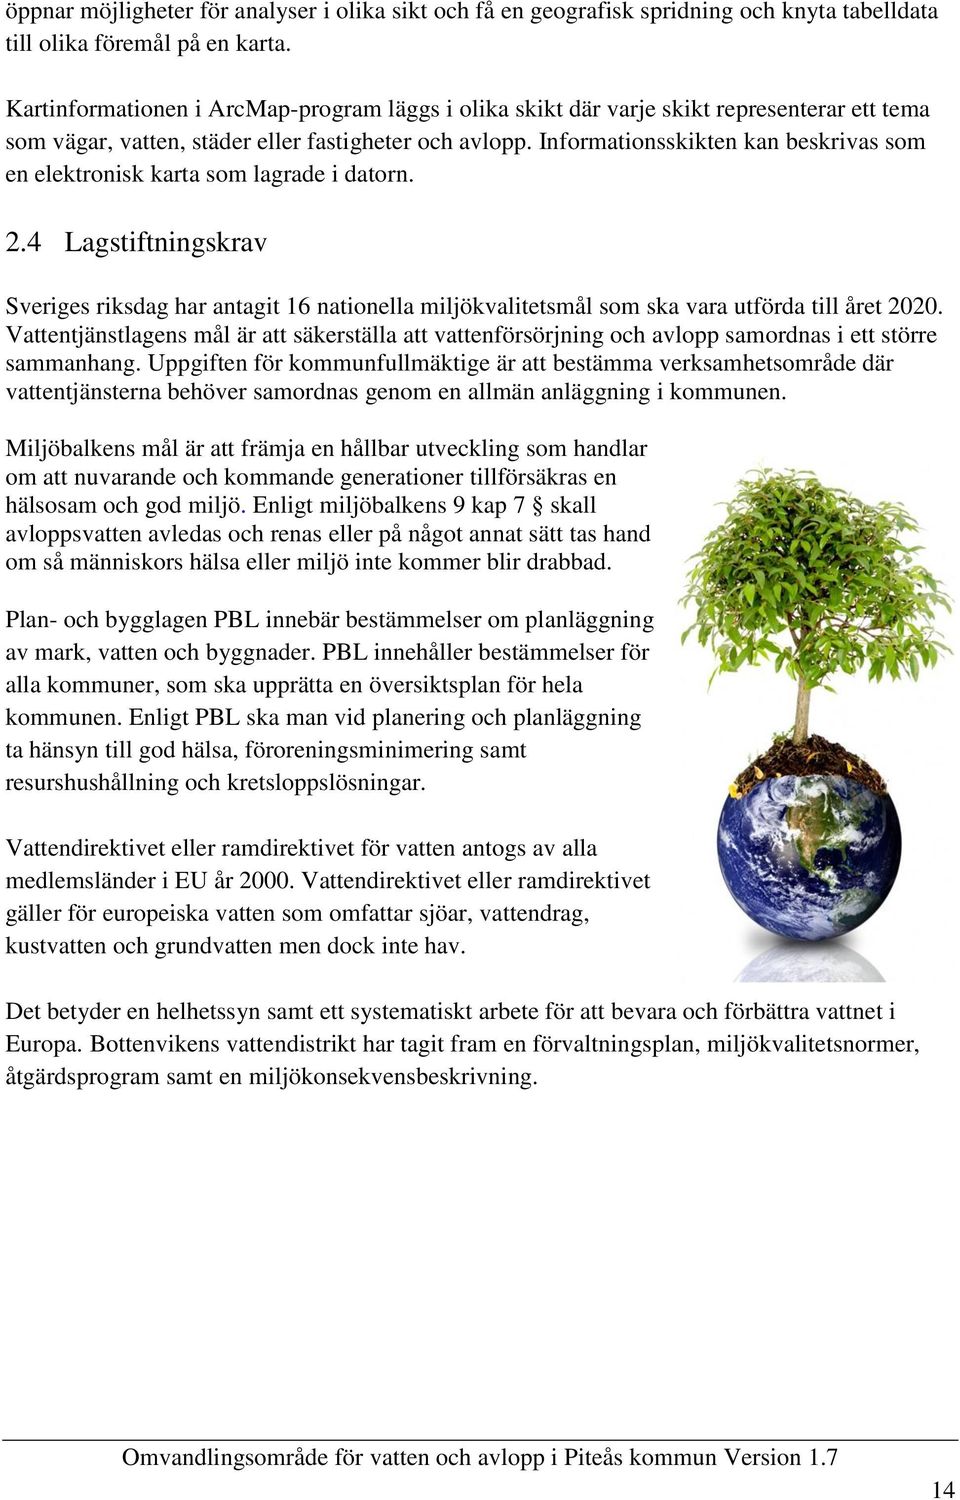 Informationsskikten kan beskrivas som en elektronisk karta som lagrade i datorn. 2.4 Lagstiftningskrav Sveriges riksdag har antagit 16 nationella miljökvalitetsmål som ska vara utförda till året 2020.